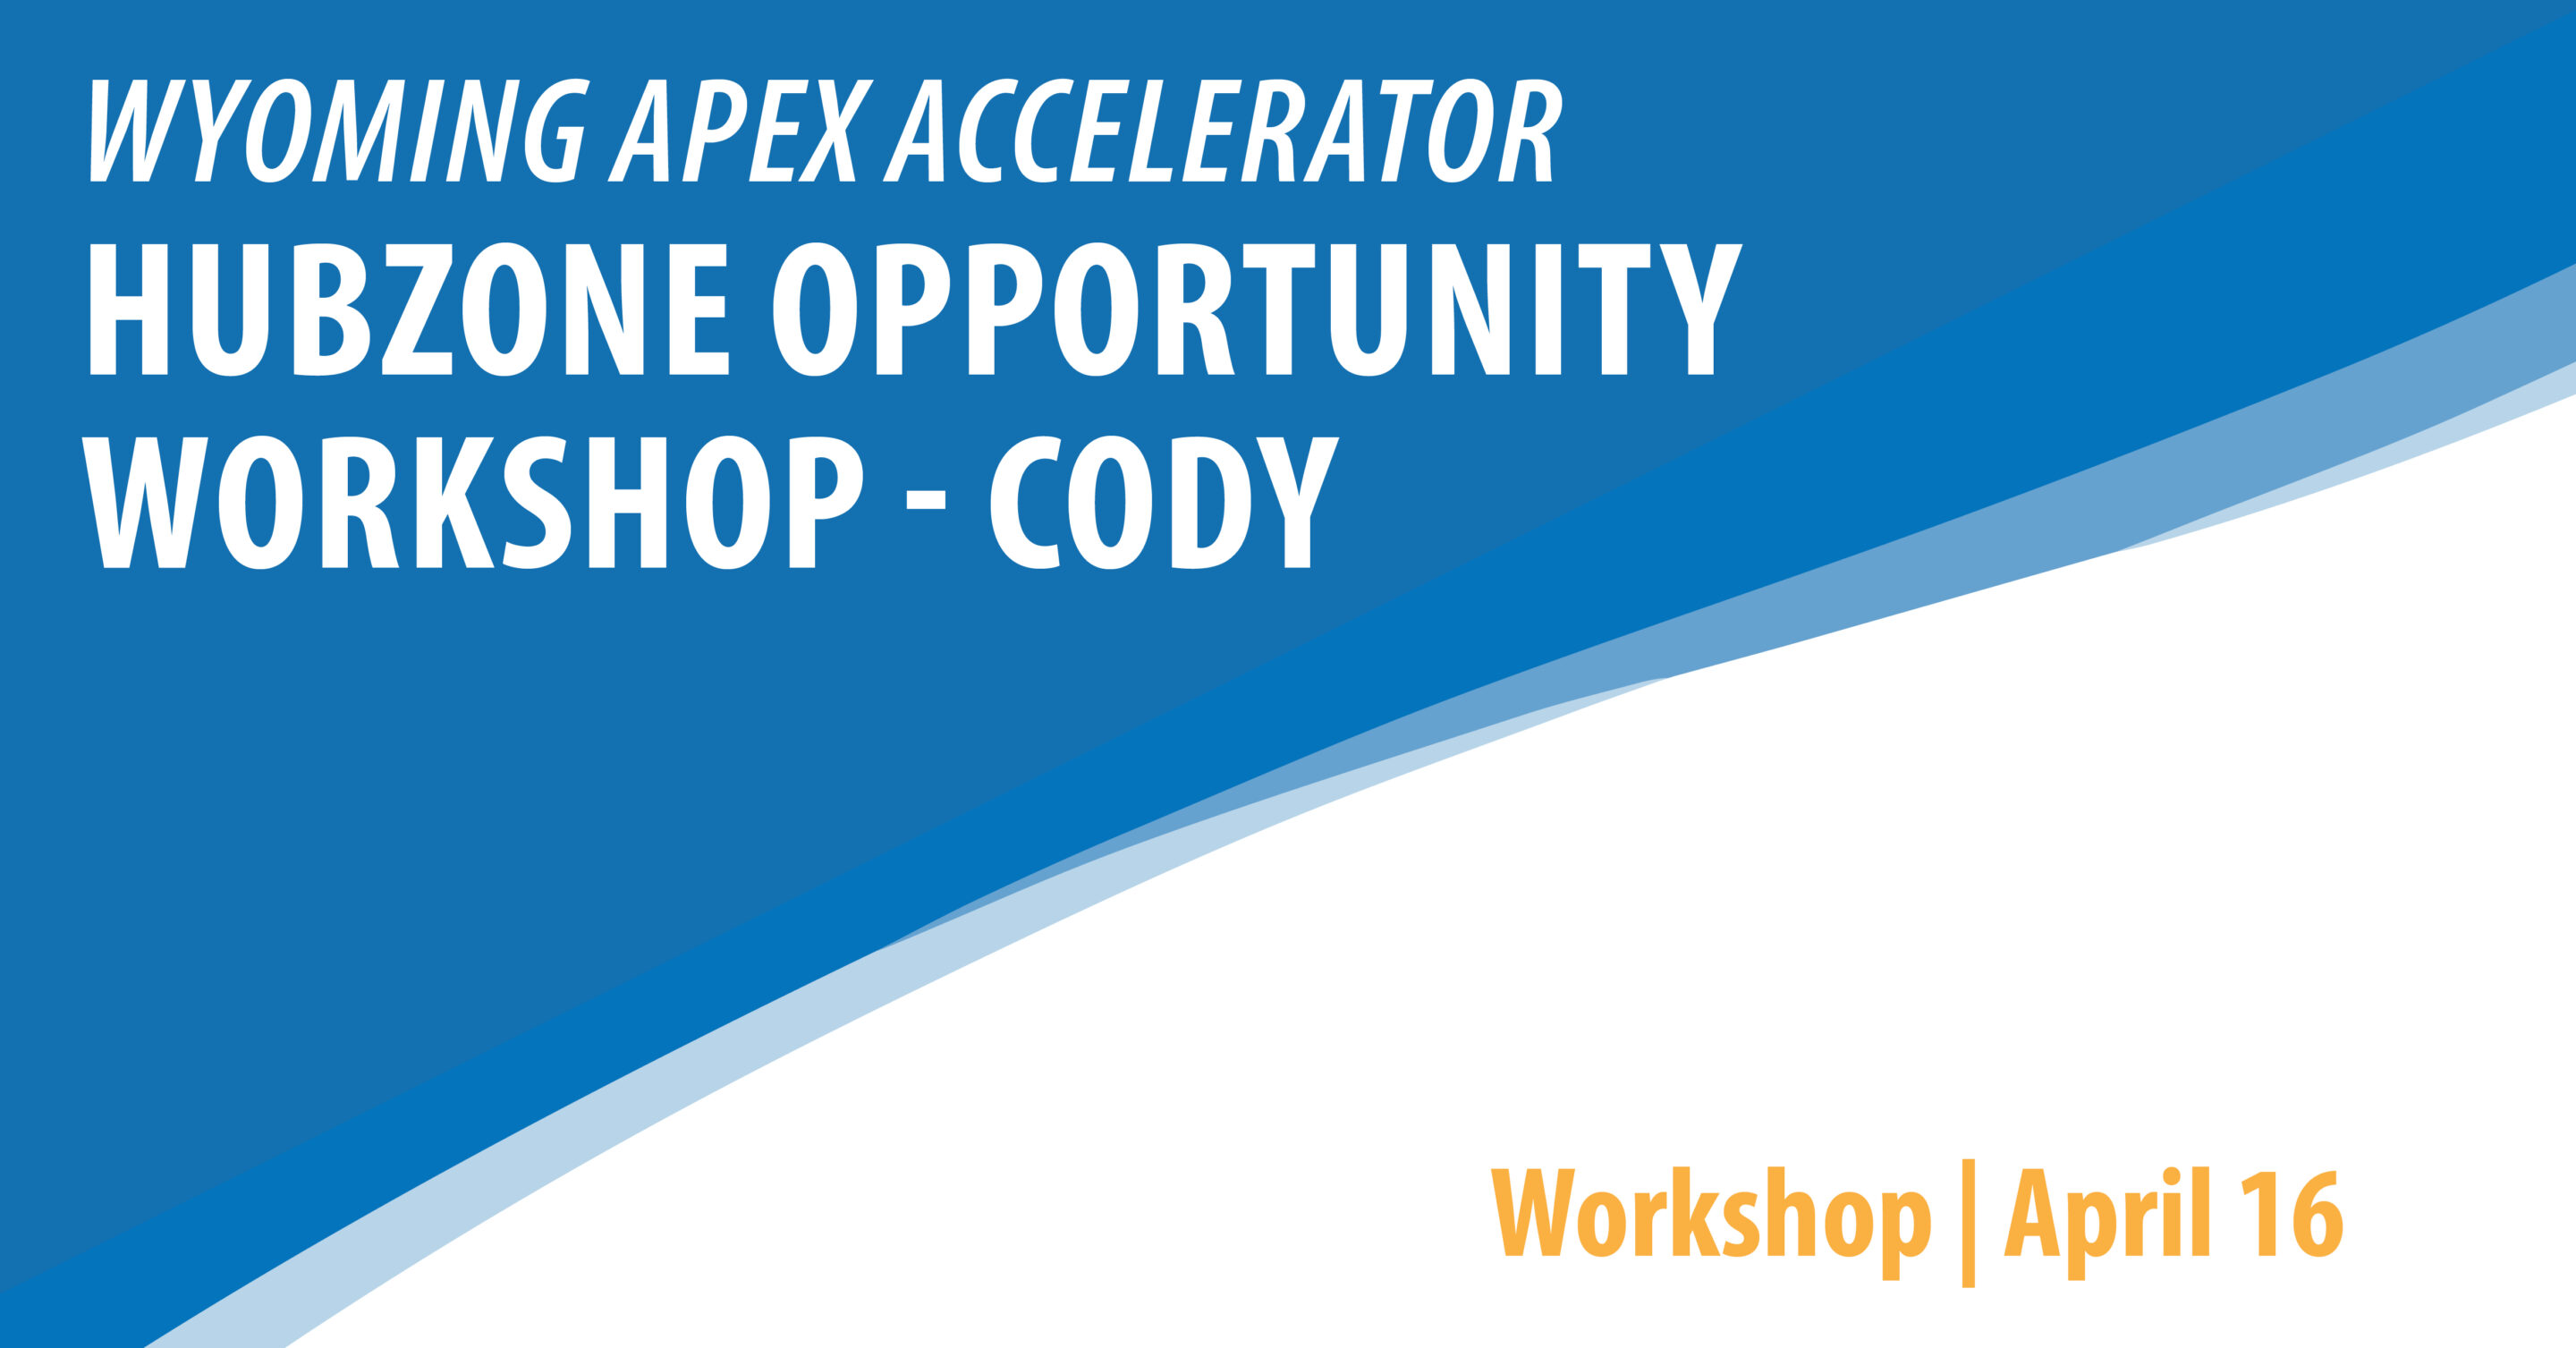 HUBZone Opportunity Workshop - Cody